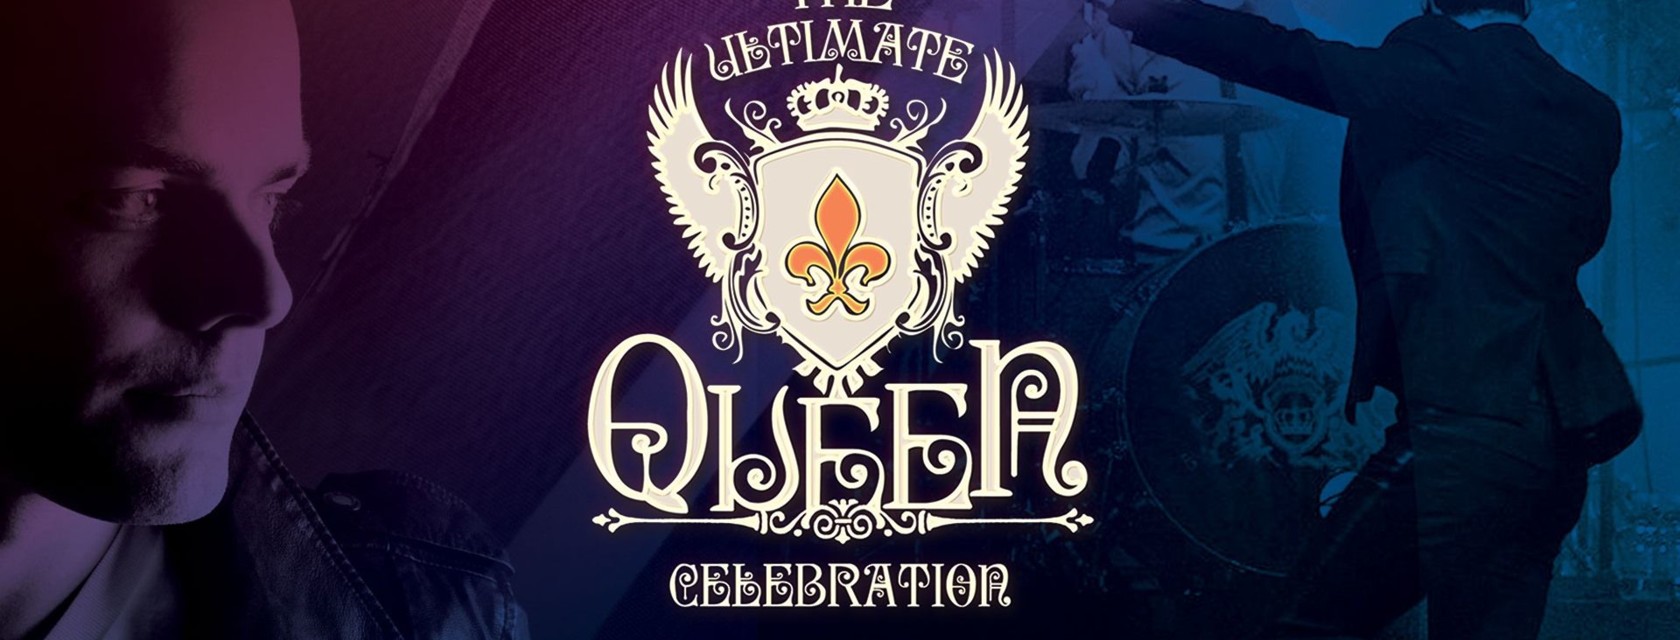 The Ultimate Queen Celebration avec Marc Martel Reporté en 2021